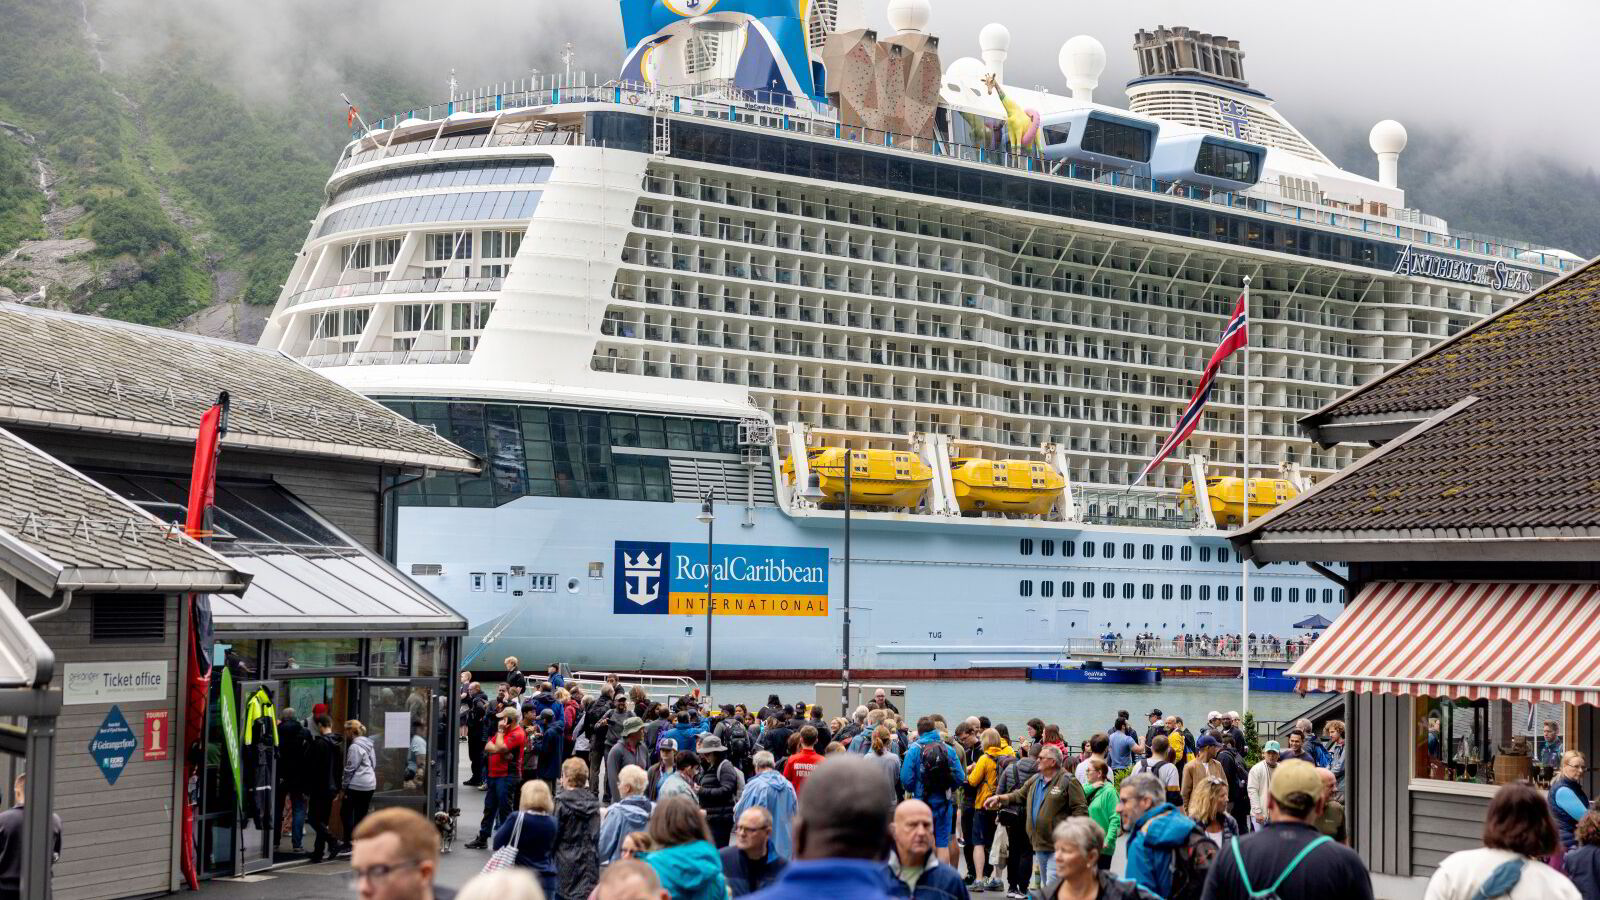 Fillerister forslag om norsk cruiselønn: – Oppsiktsvekkende